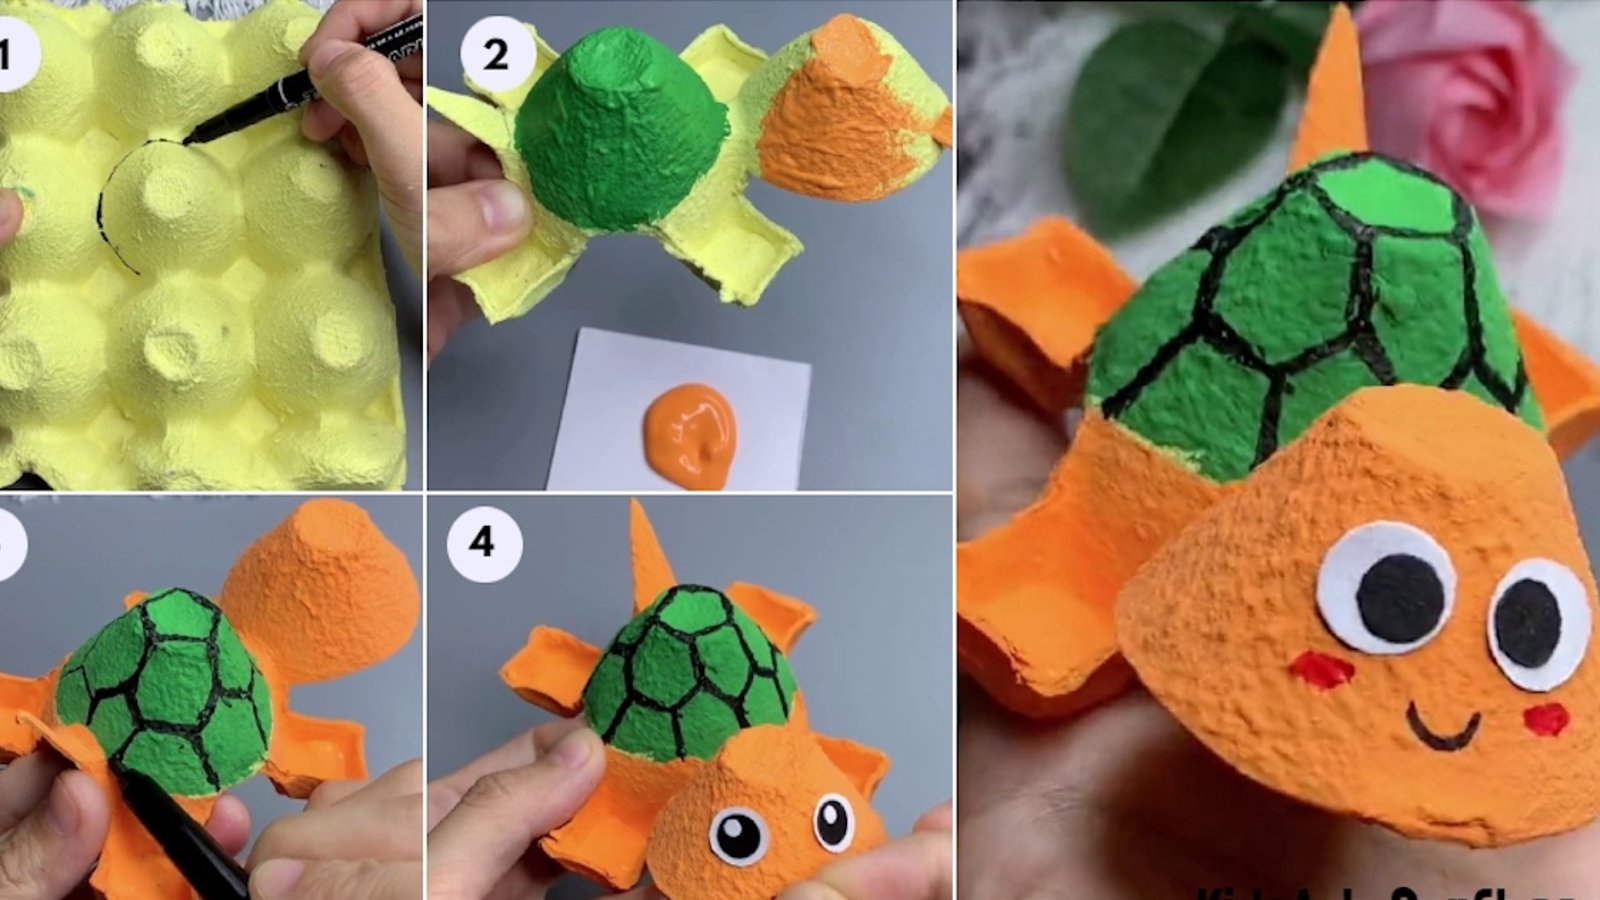 Comment réaliser une adorable tortue avec une boite d'oeufs